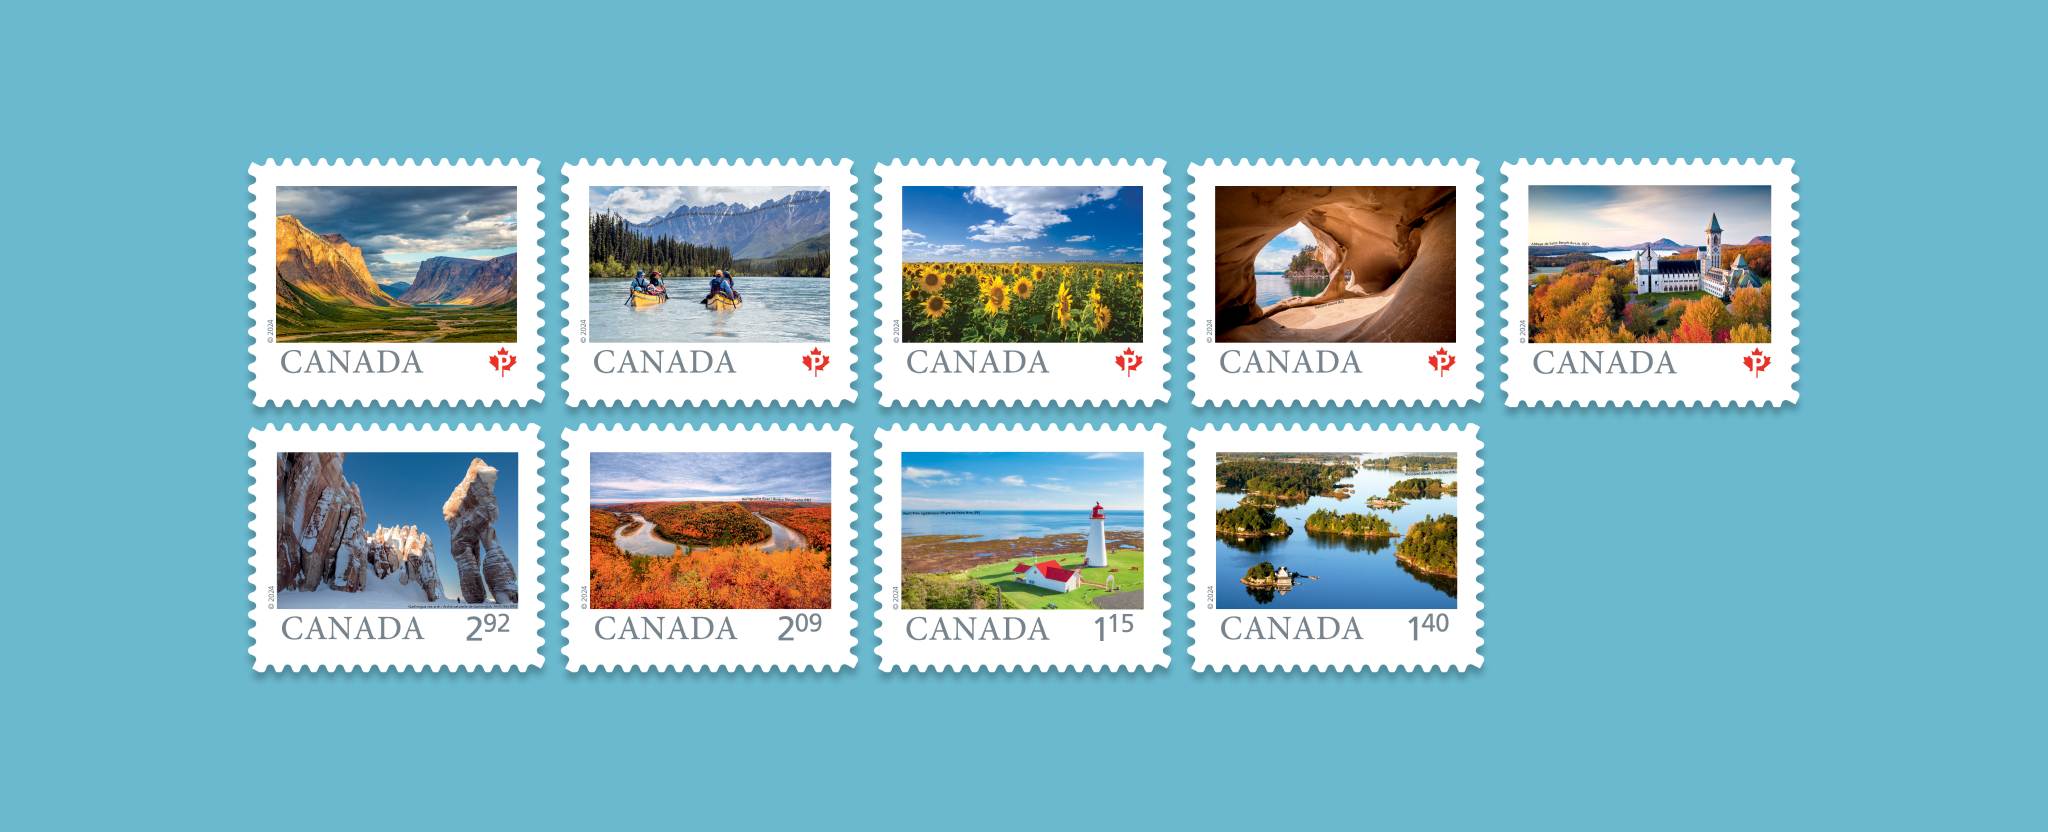 Les 9 timbres de la série Terre de nos aïeux célèbrent la beauté et la diversité des paysages naturels et culturels du Canada.